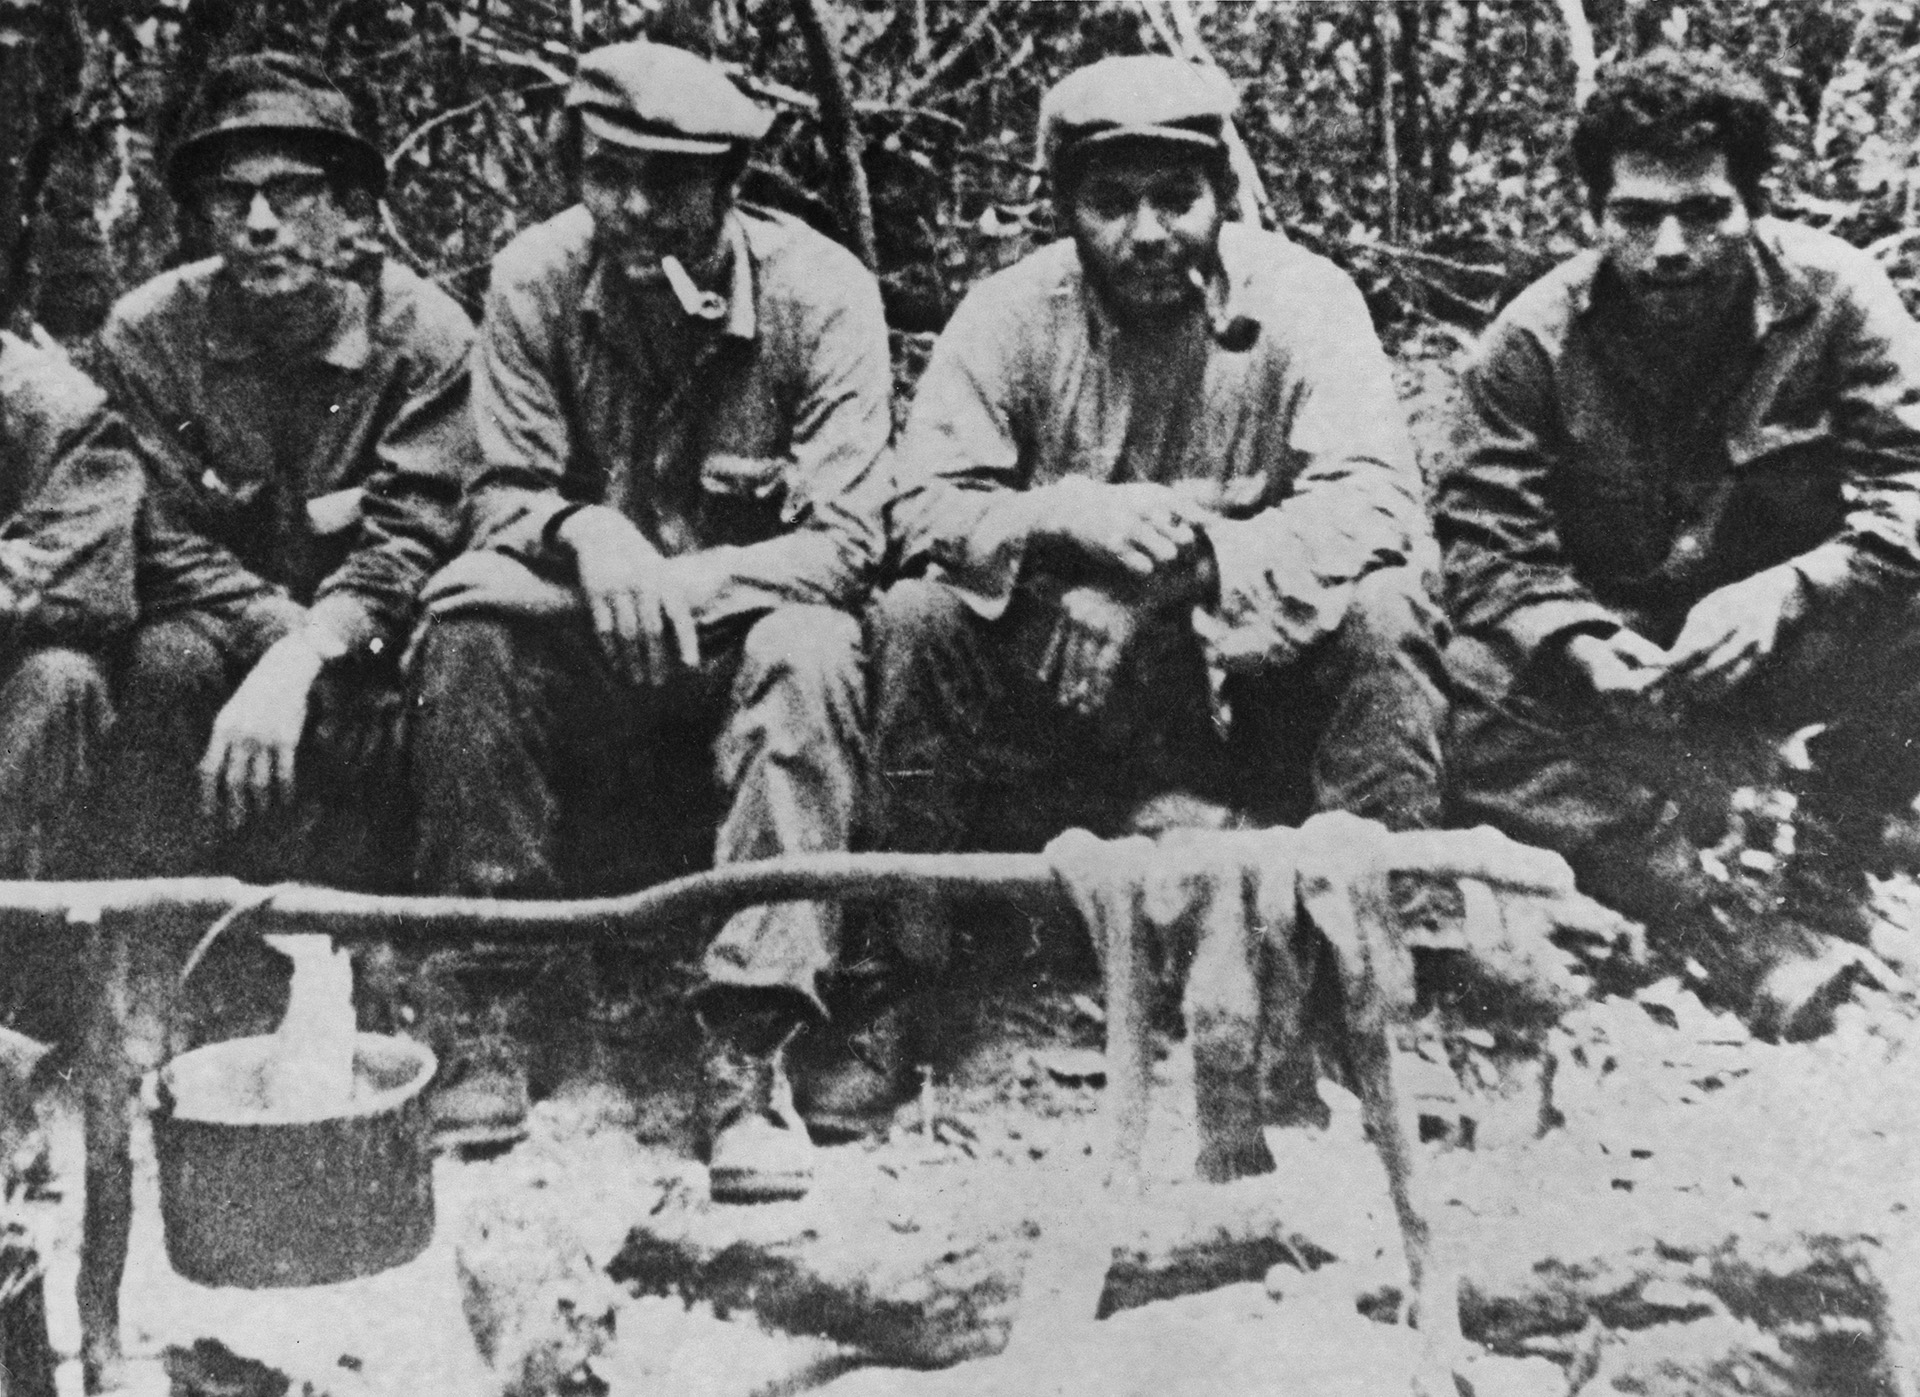 El guerrillero marxista argentino Che Guevara (segundo desde la izquierda) junto a compañeros del ELN (Ejército de Liberación Nacional de Bolivia) en el campamento de Nancahuazu, en la selva boliviana, 1967 (Foto de Hulton Archive/Getty Images)